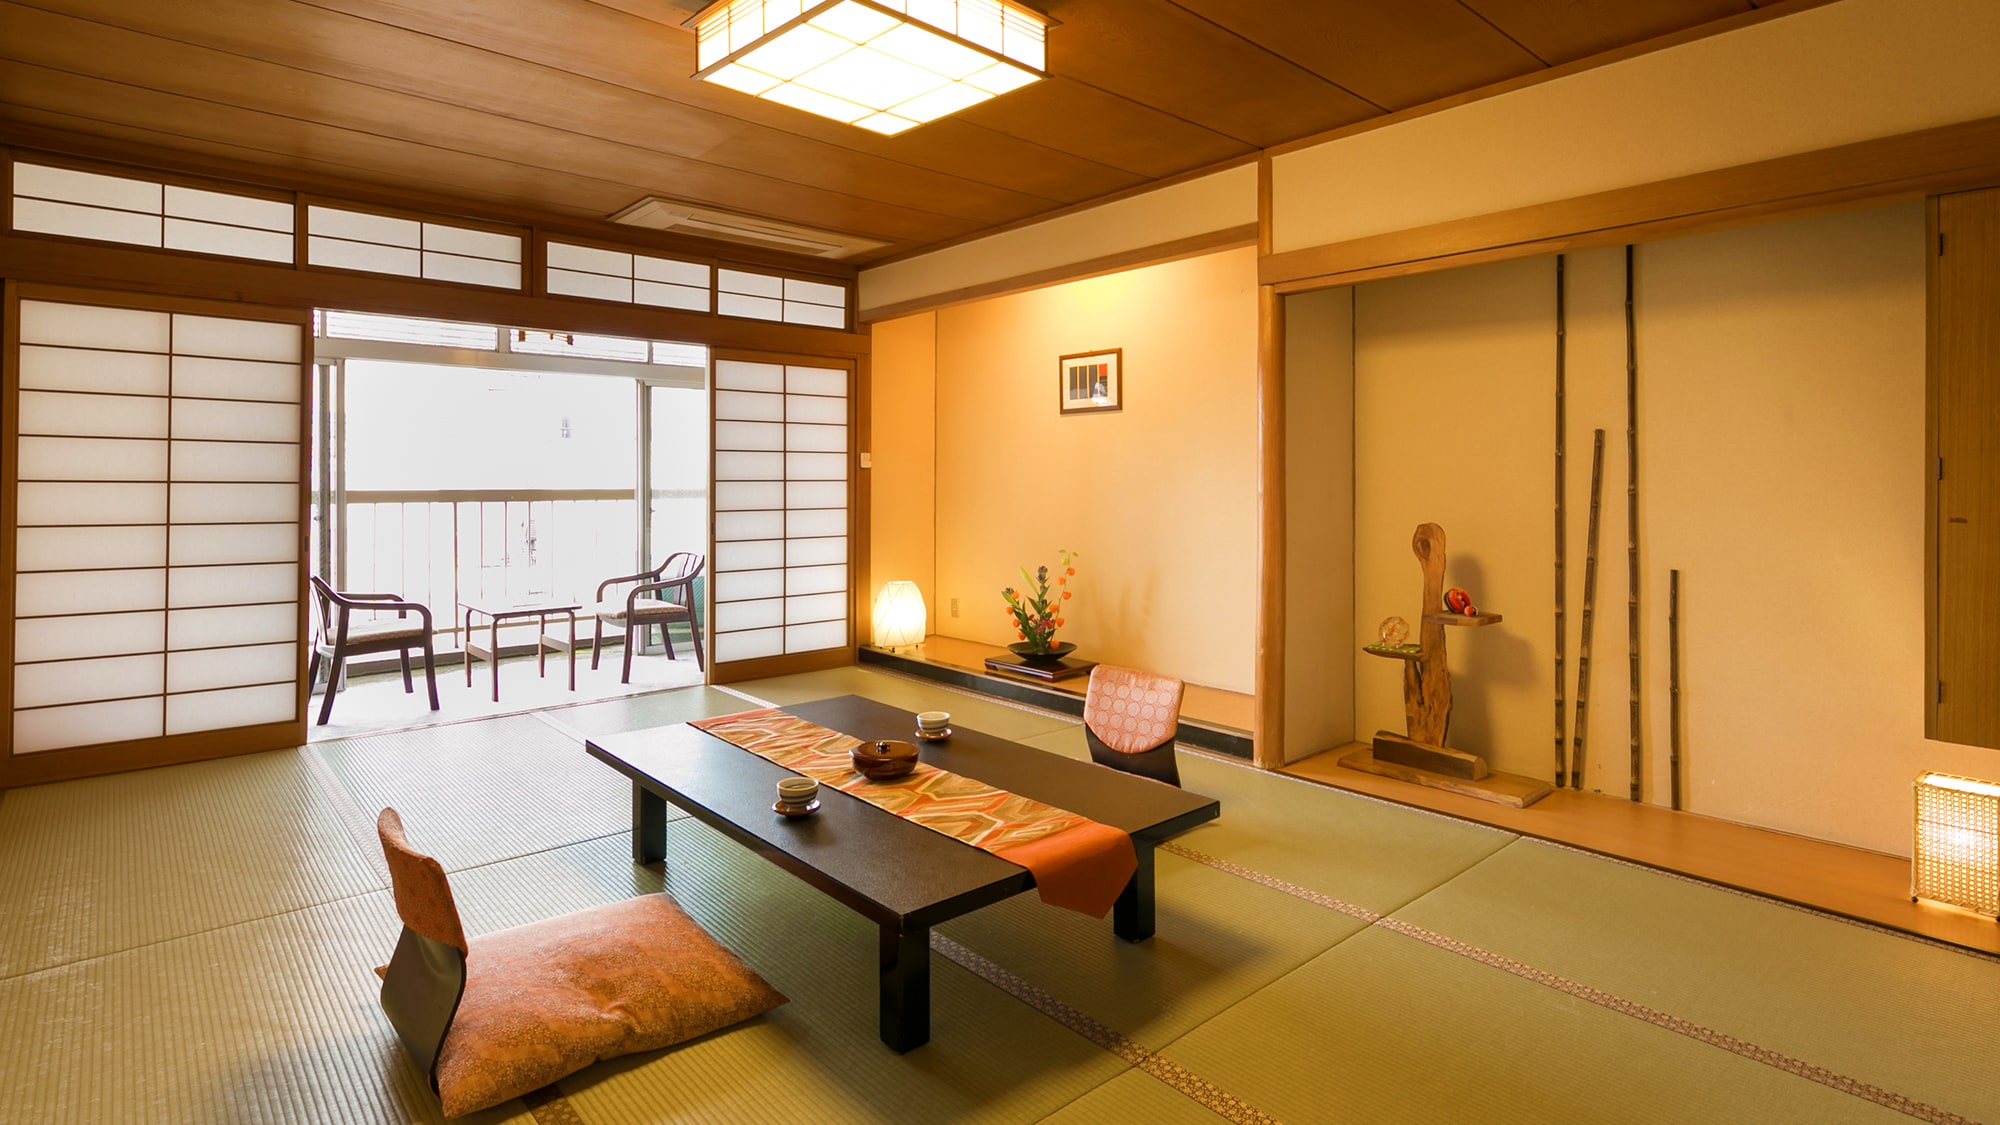 ■ ห้องสไตล์ญี่ปุ่น 12 เสื่อทาทามิ ■ พื้นที่กว้างขวางสำหรับการนอนหลับสบายตลอดคืน ♪